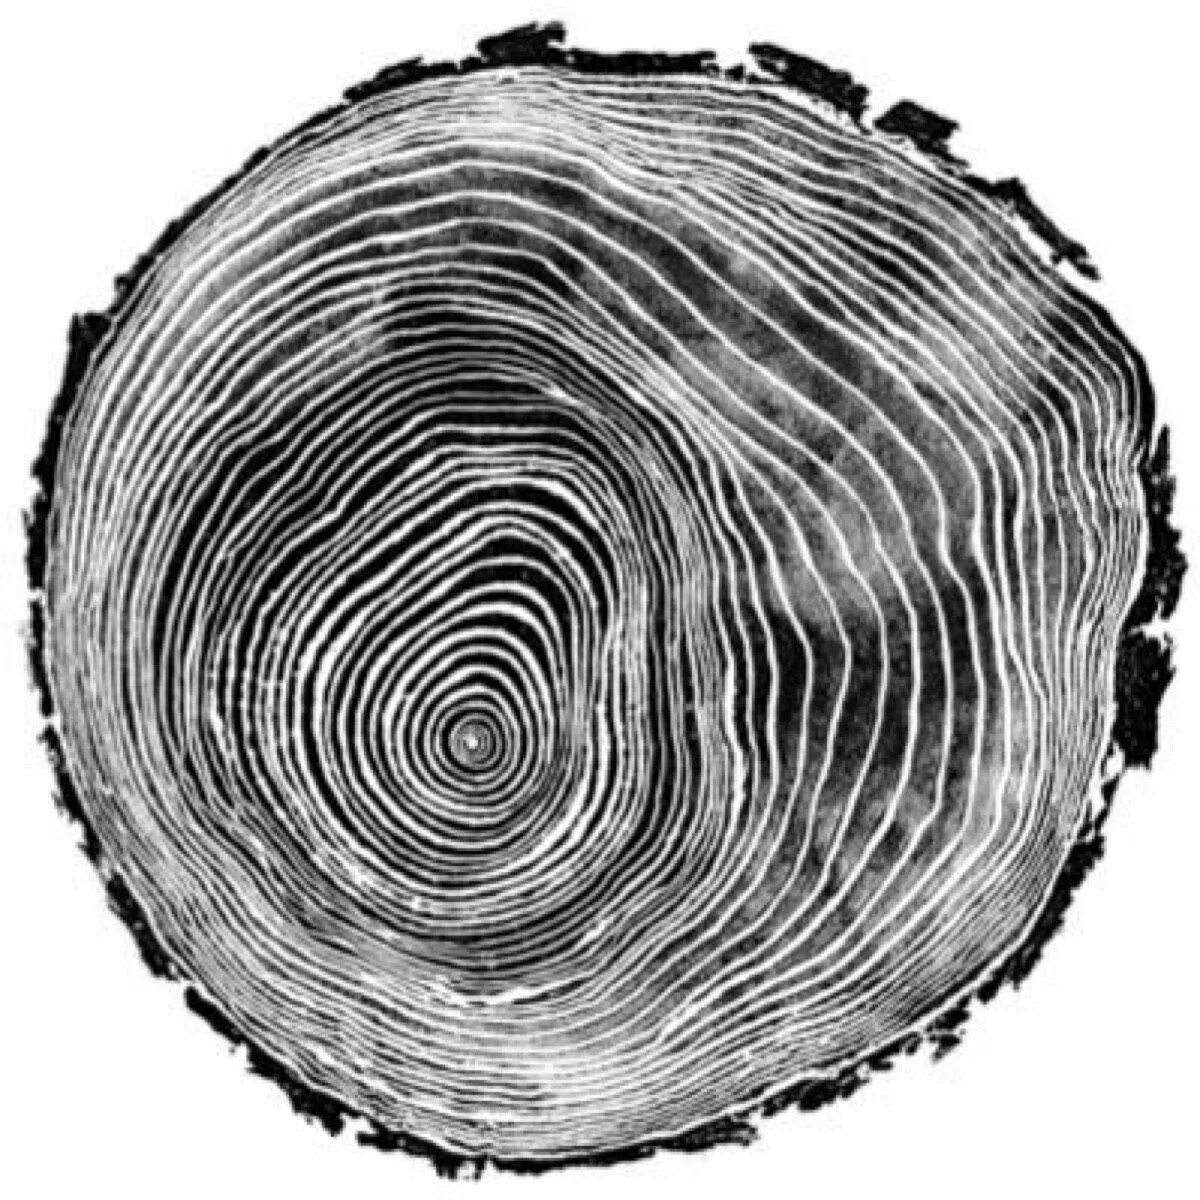 Дерево в разрезе. Срез дерева. Кольца дерева в разрезе. Срез дерева текстура.